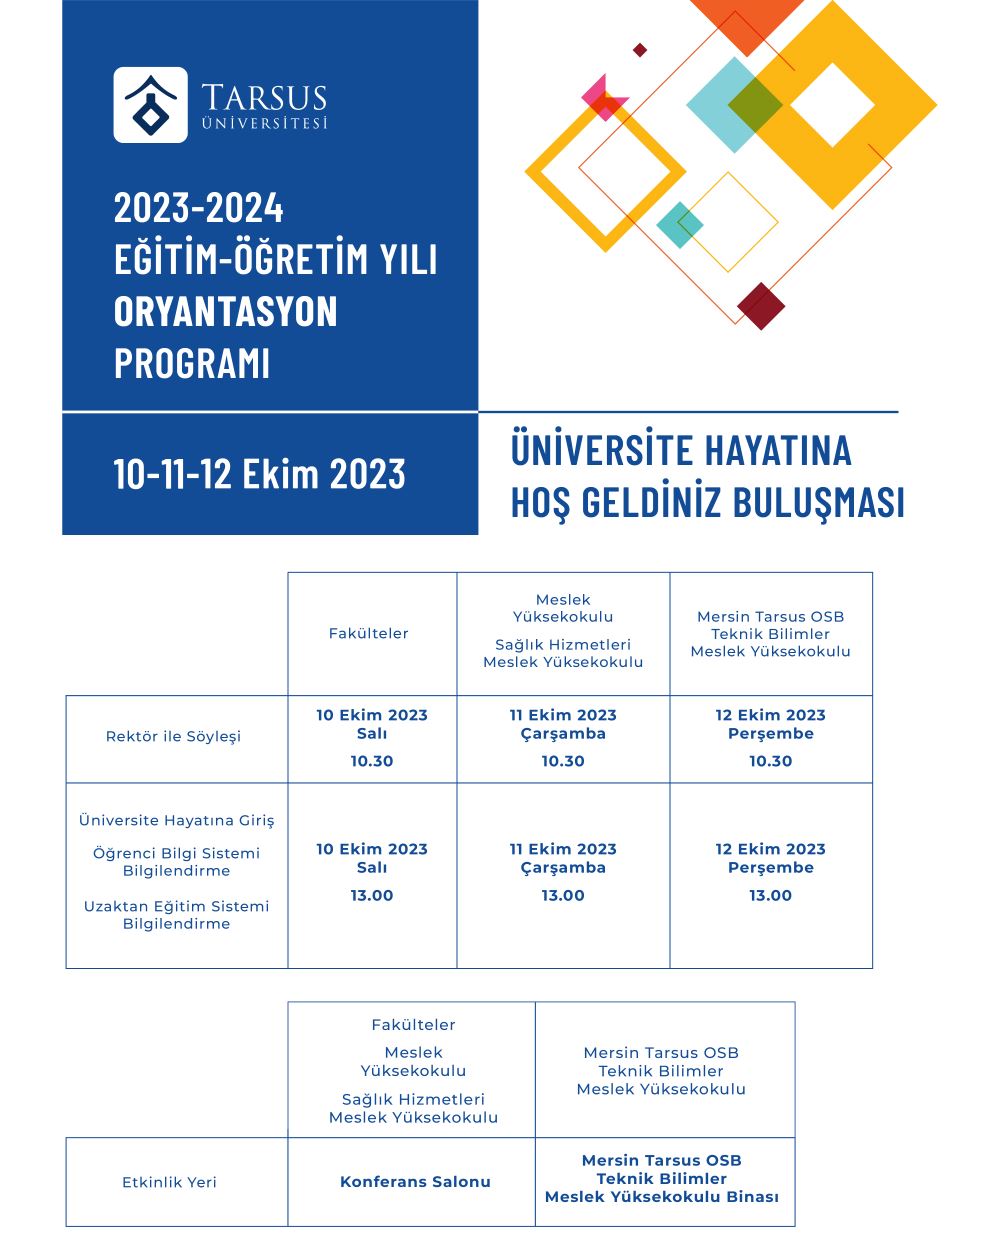 Üniversite Hayatına Hoş Geldiniz Buluşması (2023-2024 Eğitim-Öğretim Yılı Oryantasyon Programı)